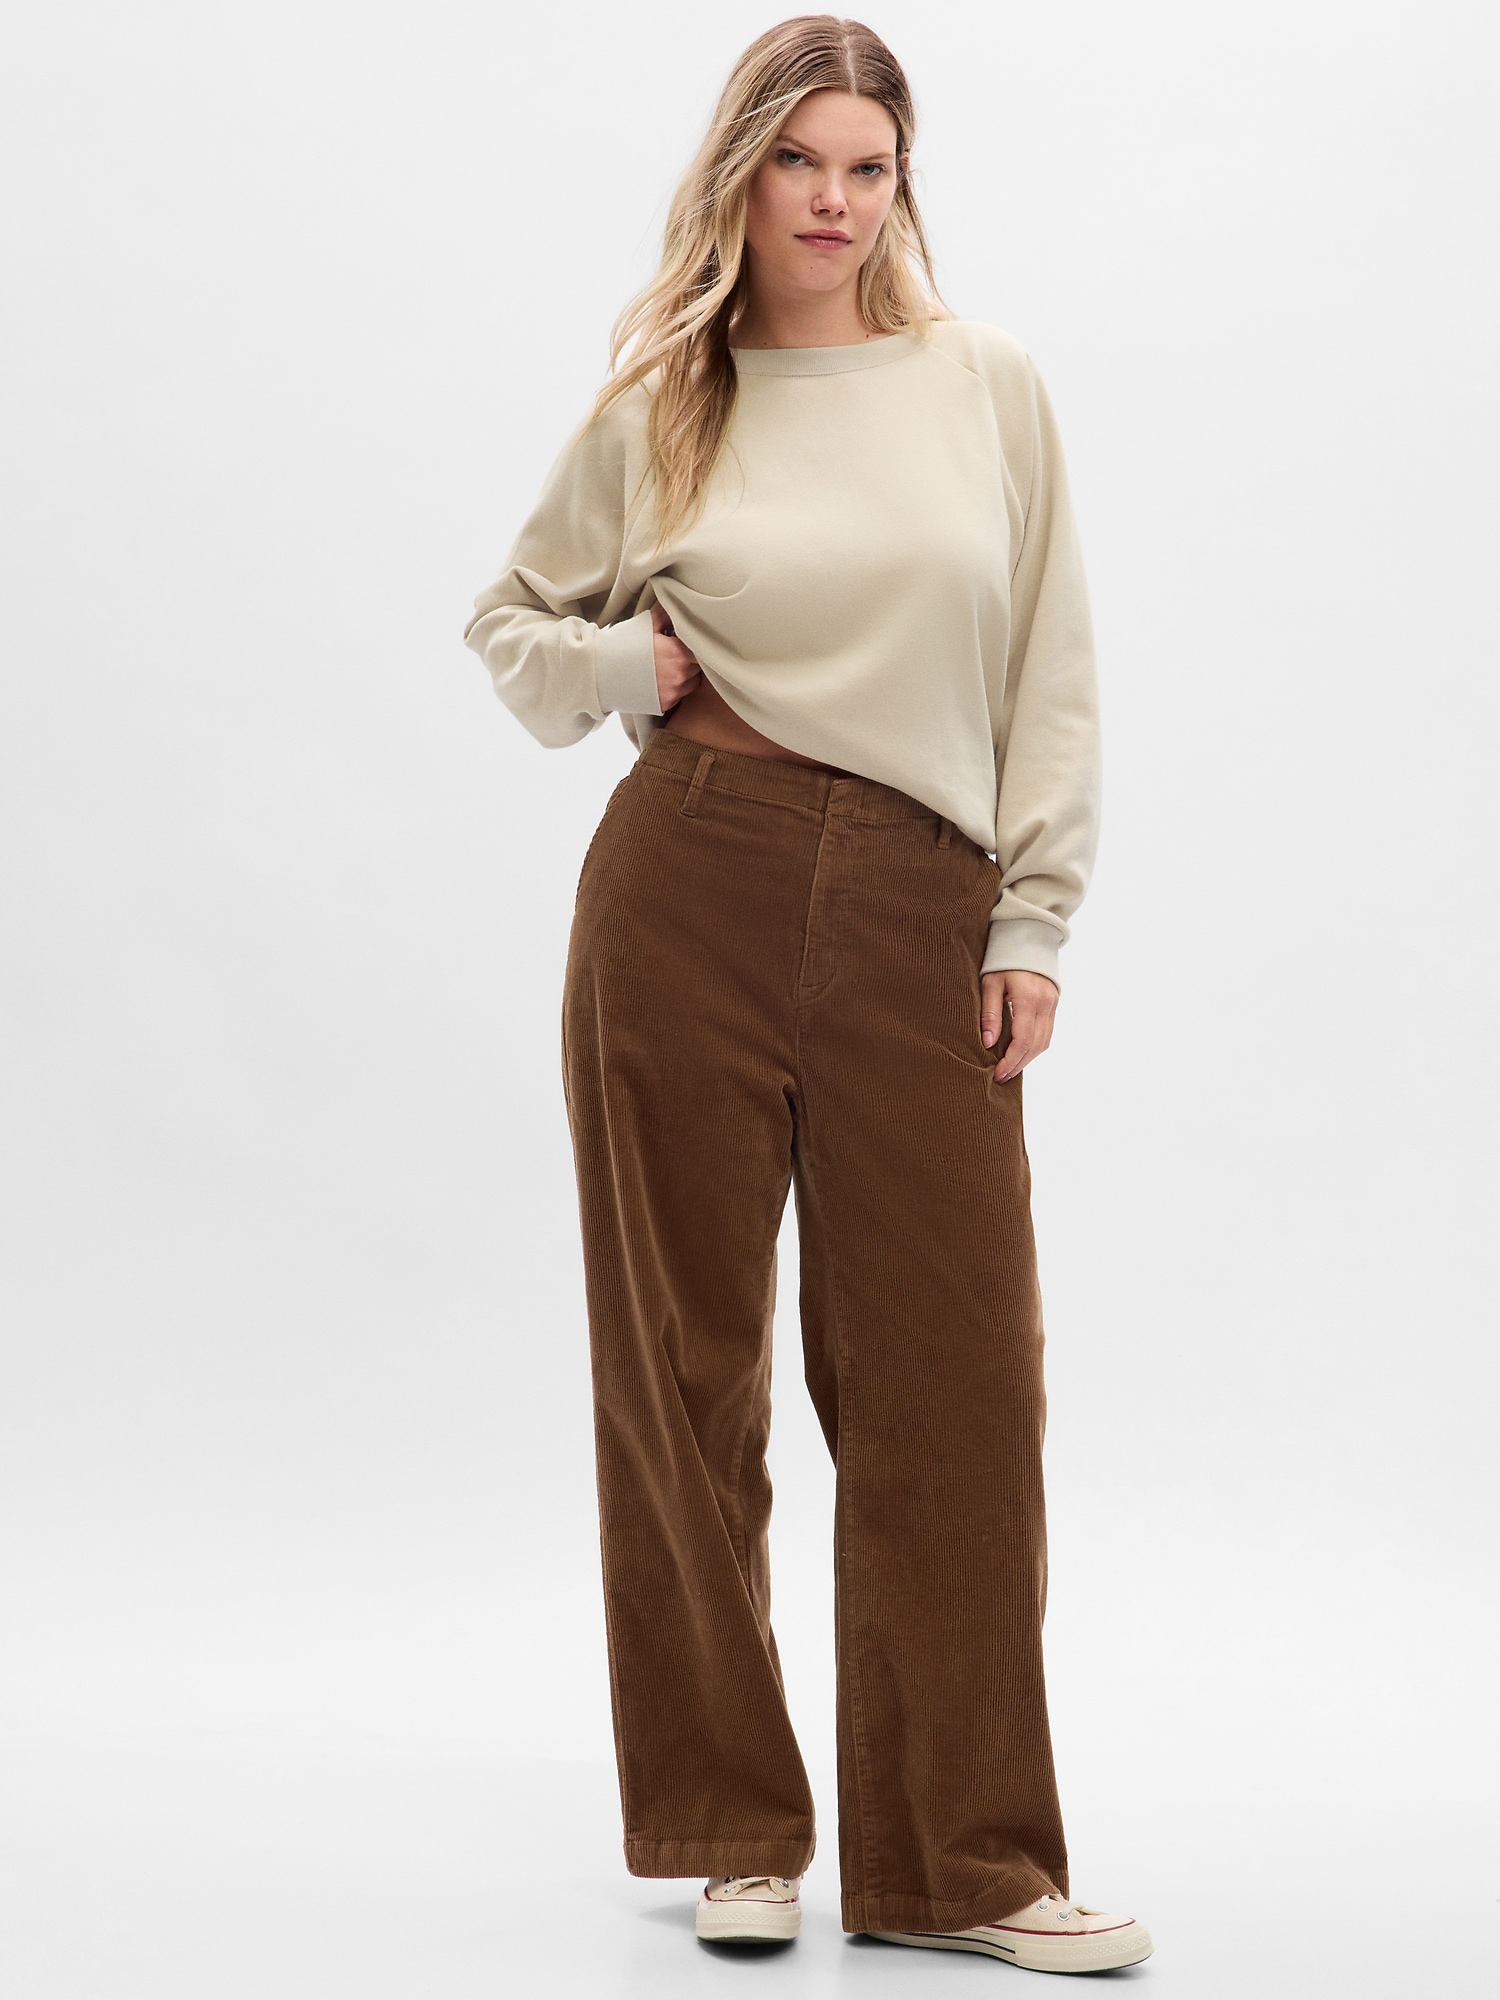 Women's Gap Low Rise Bootcut Light Beige Khaki Corduroy Pants Size